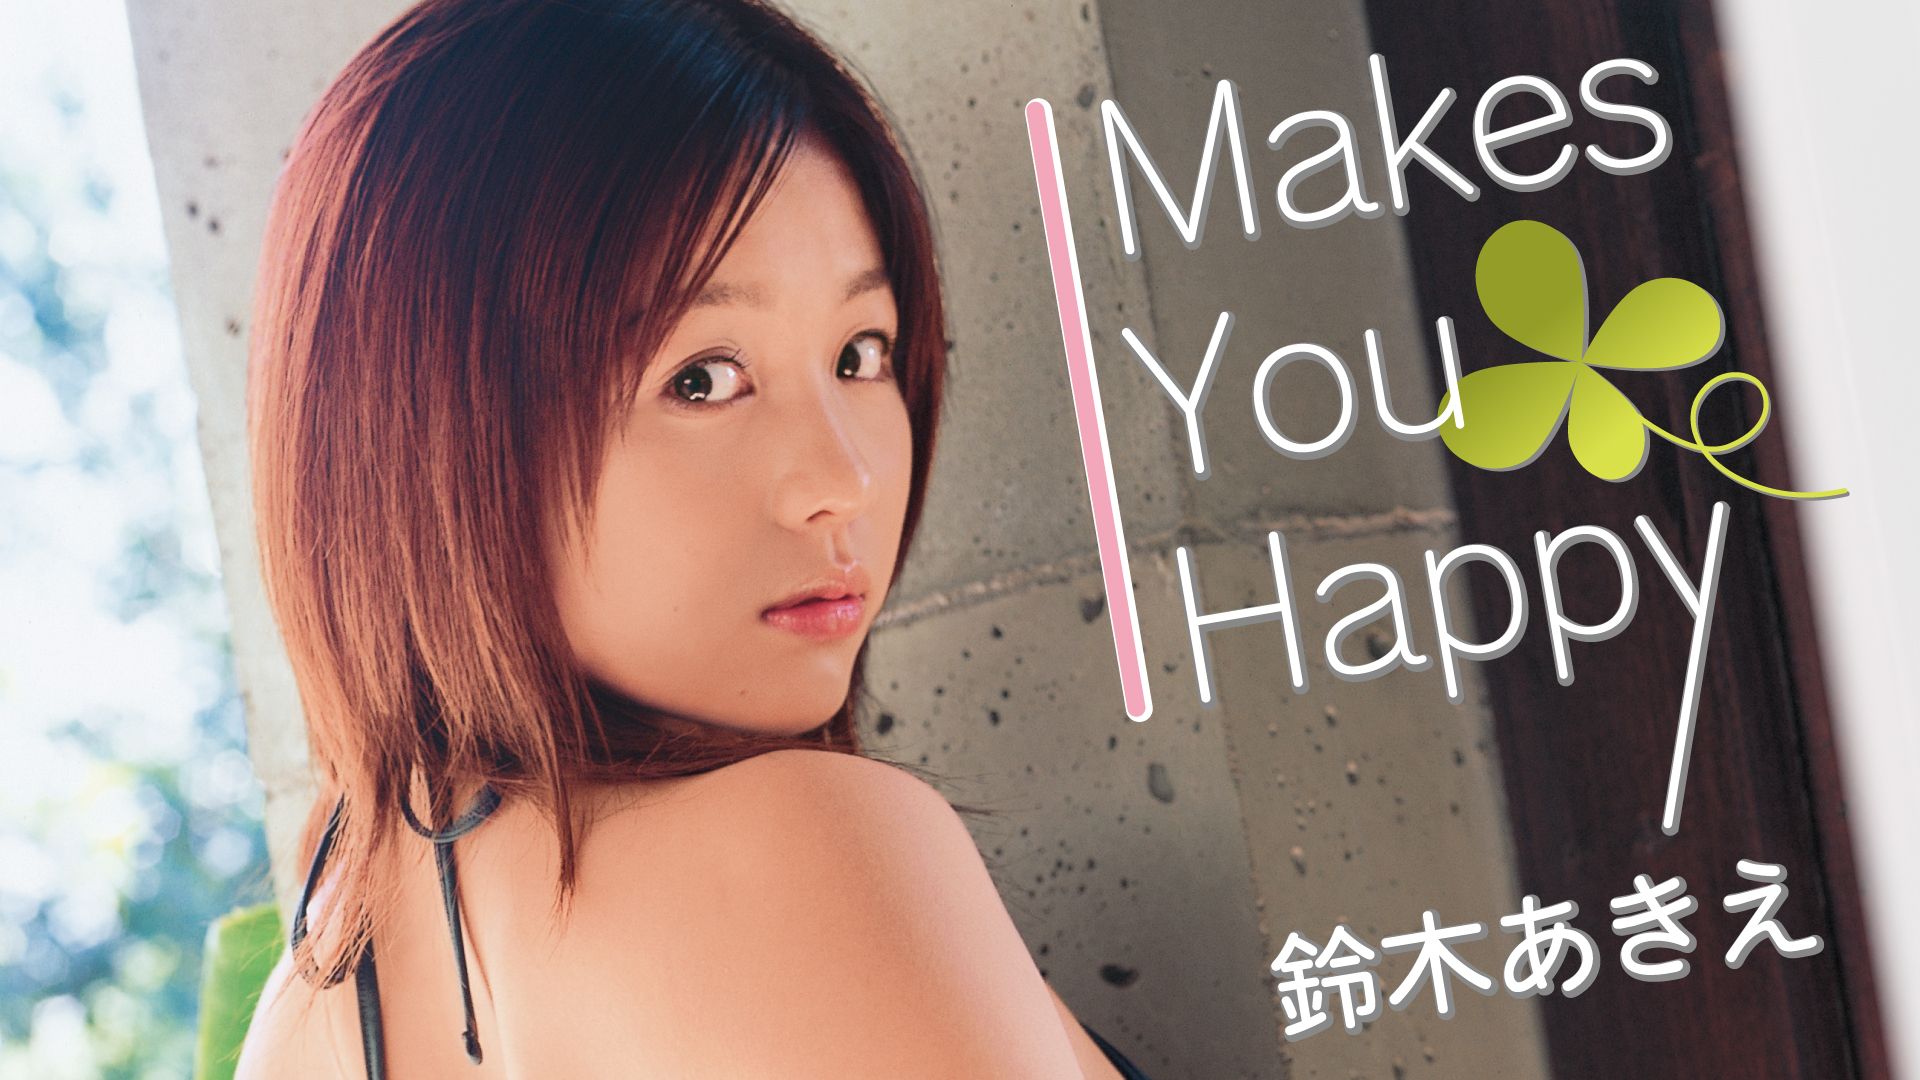 鈴木あきえ「Makes You Happy」